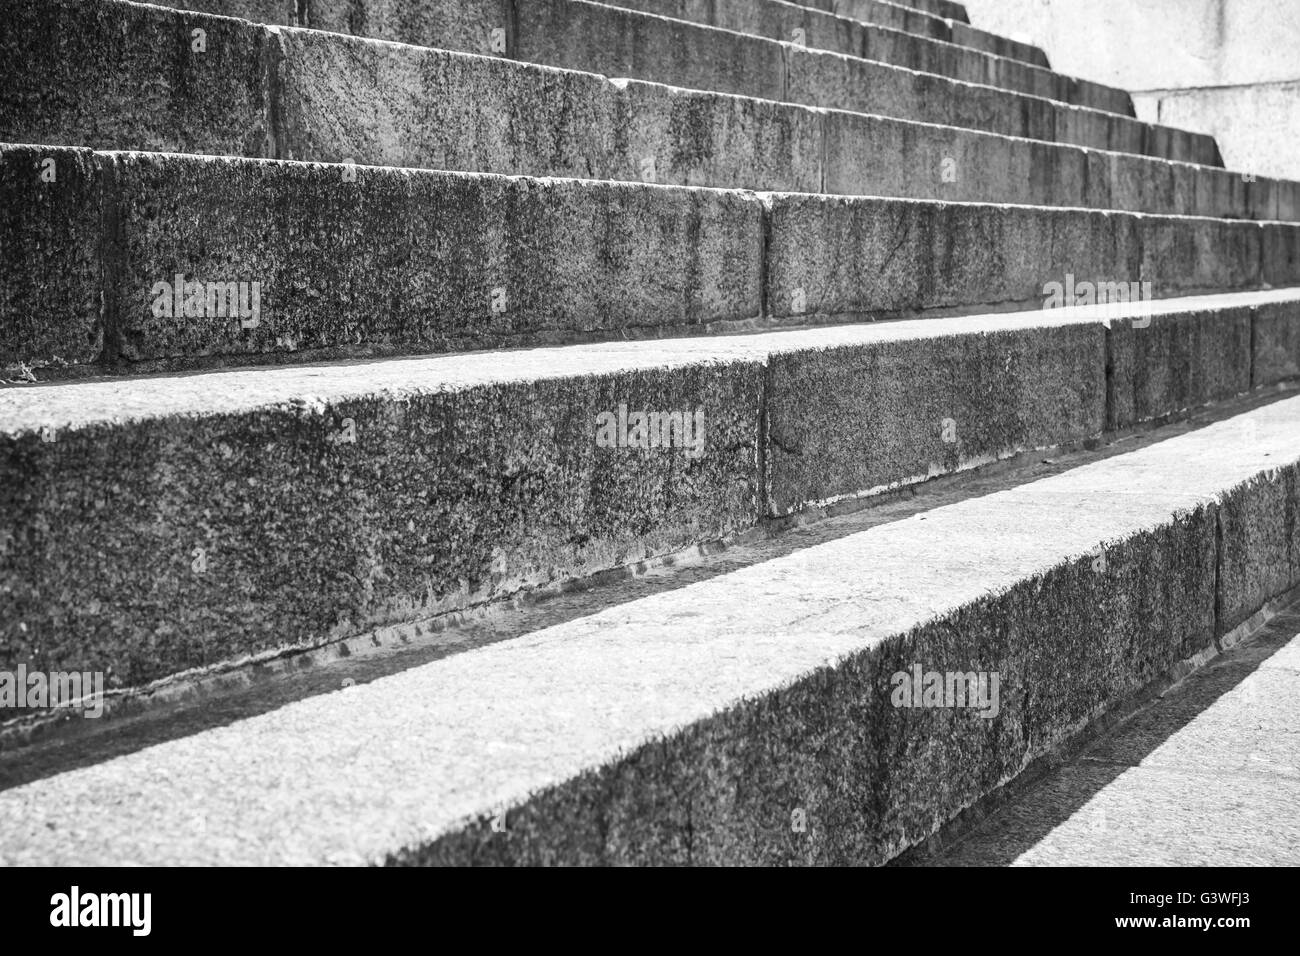 Abstrakt Architektur-Fragment. Alte Treppe aus Granit Steinblöcken, Nahaufnahme Foto mit selektiven Fokus gemacht Stockfoto